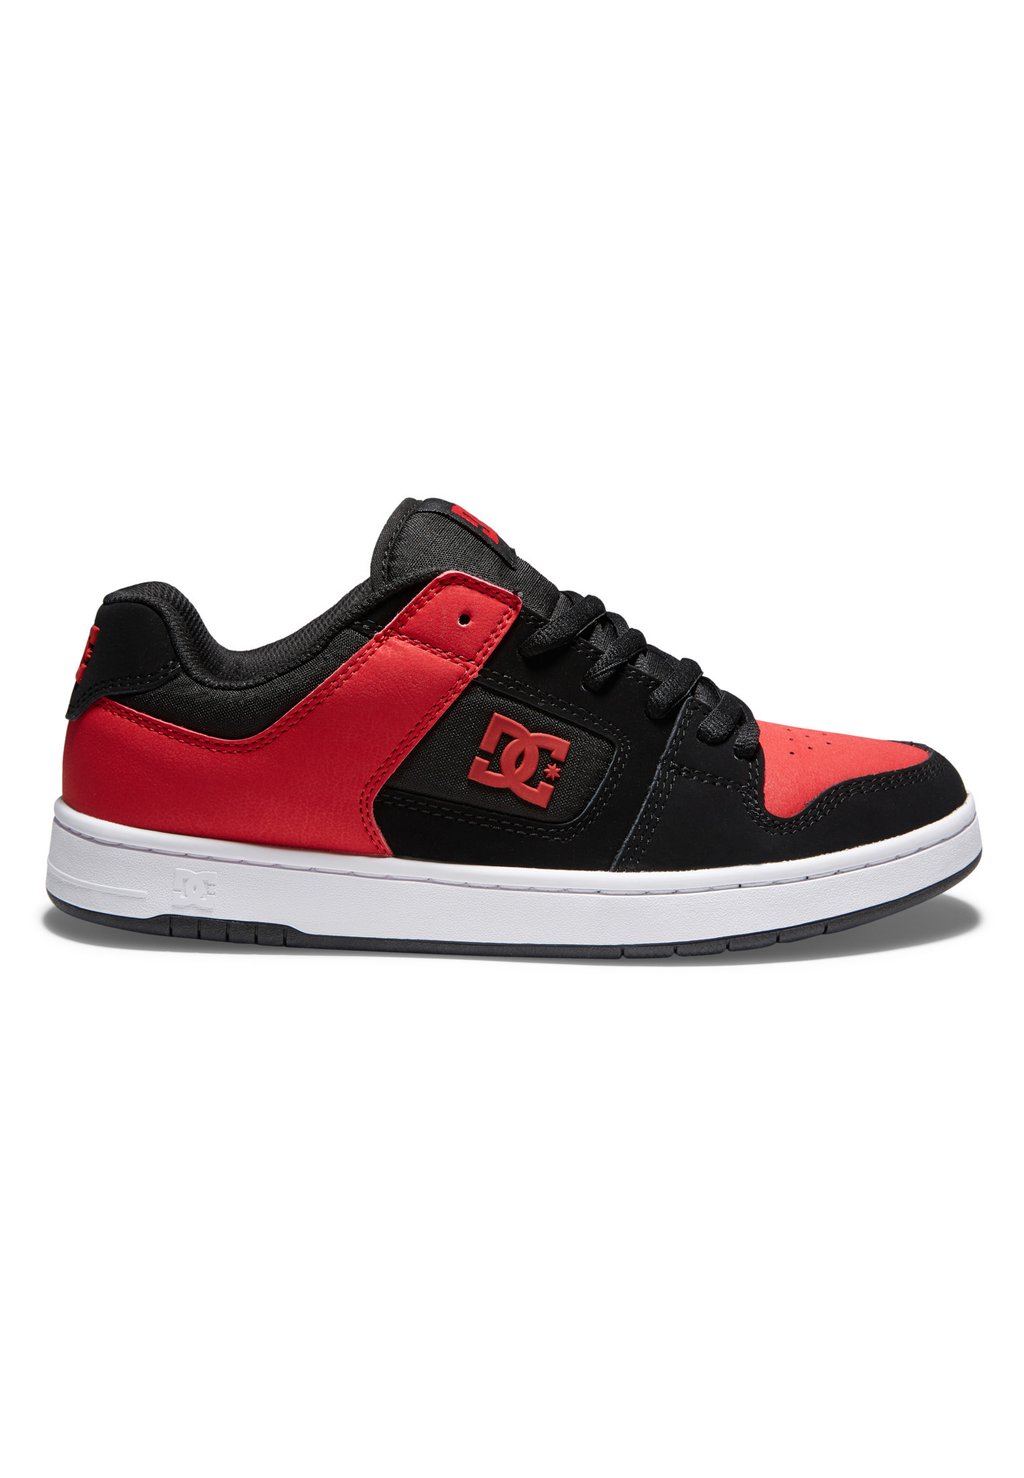 Низкие кроссовки MANTECA 4 DC Shoes, черный спортивный красный